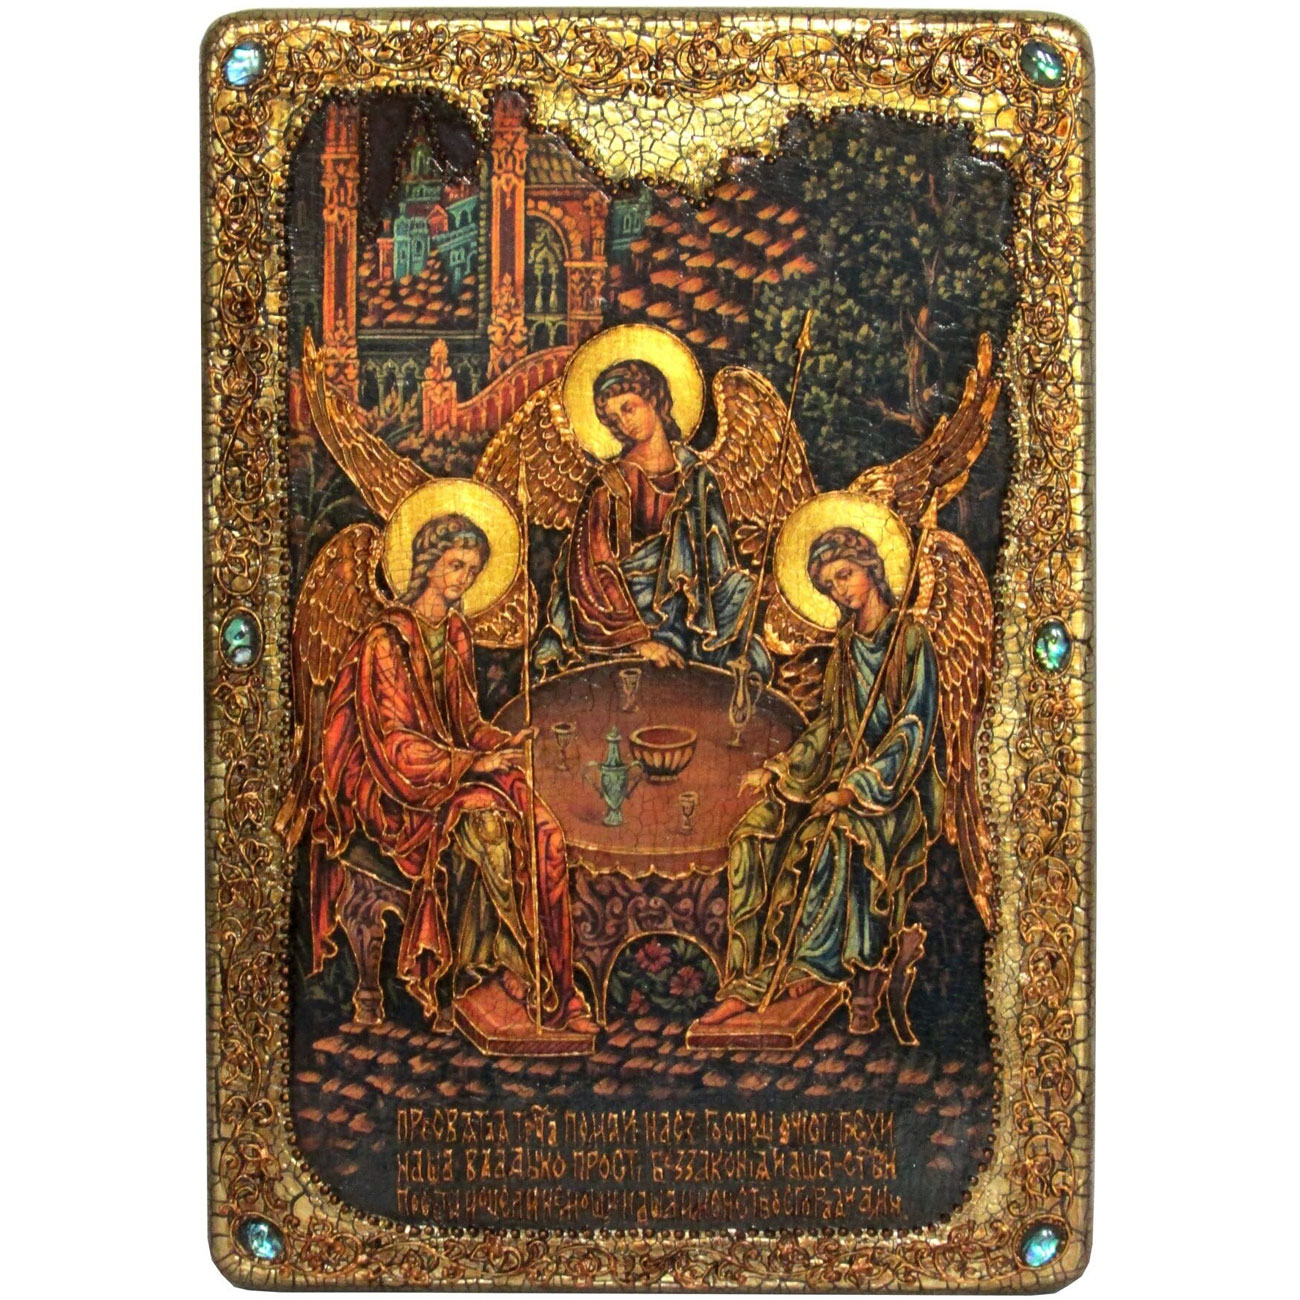 Большая подарочная икона "Троица" на мореном дубе - артикул: 800730 | Мосподарок 